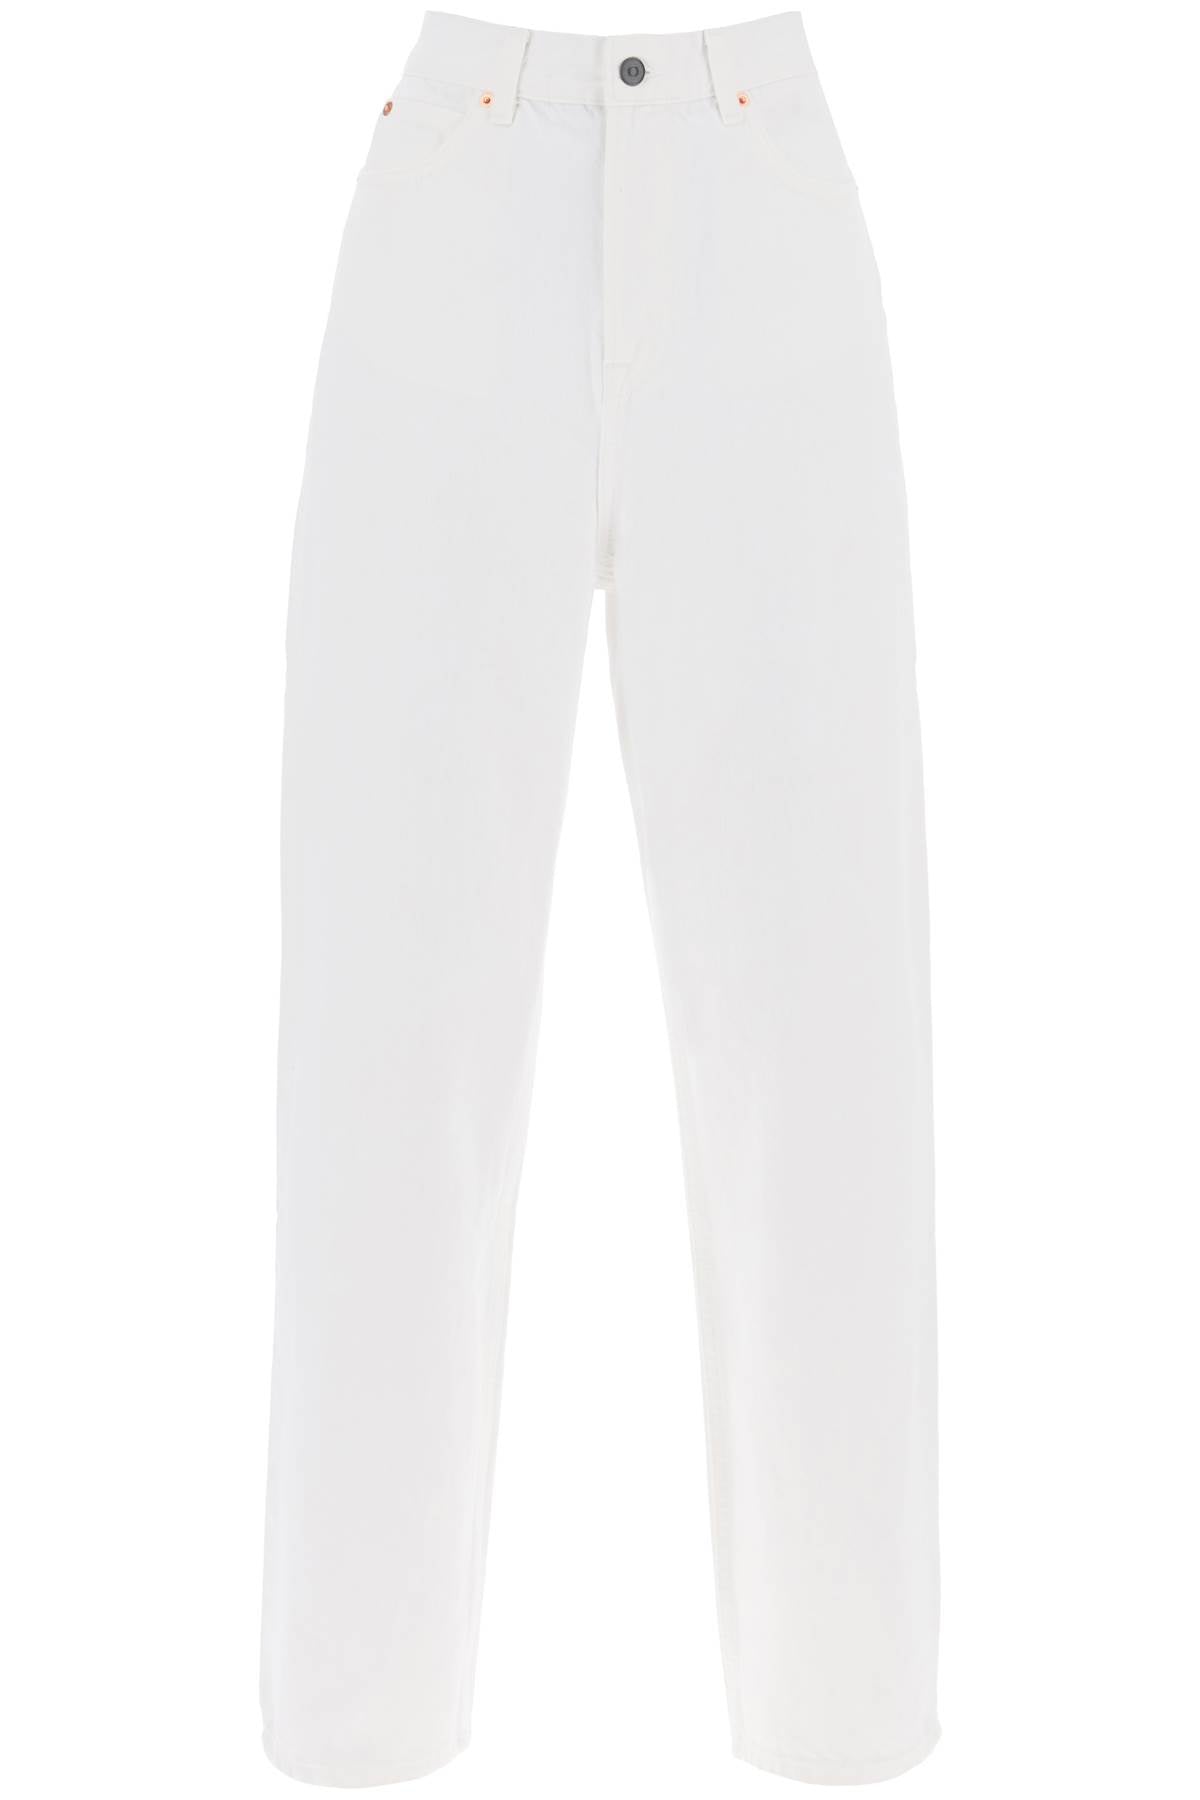 Wardrobe.nyc 低腰寬鬆牛仔褲 W2048PC 白色